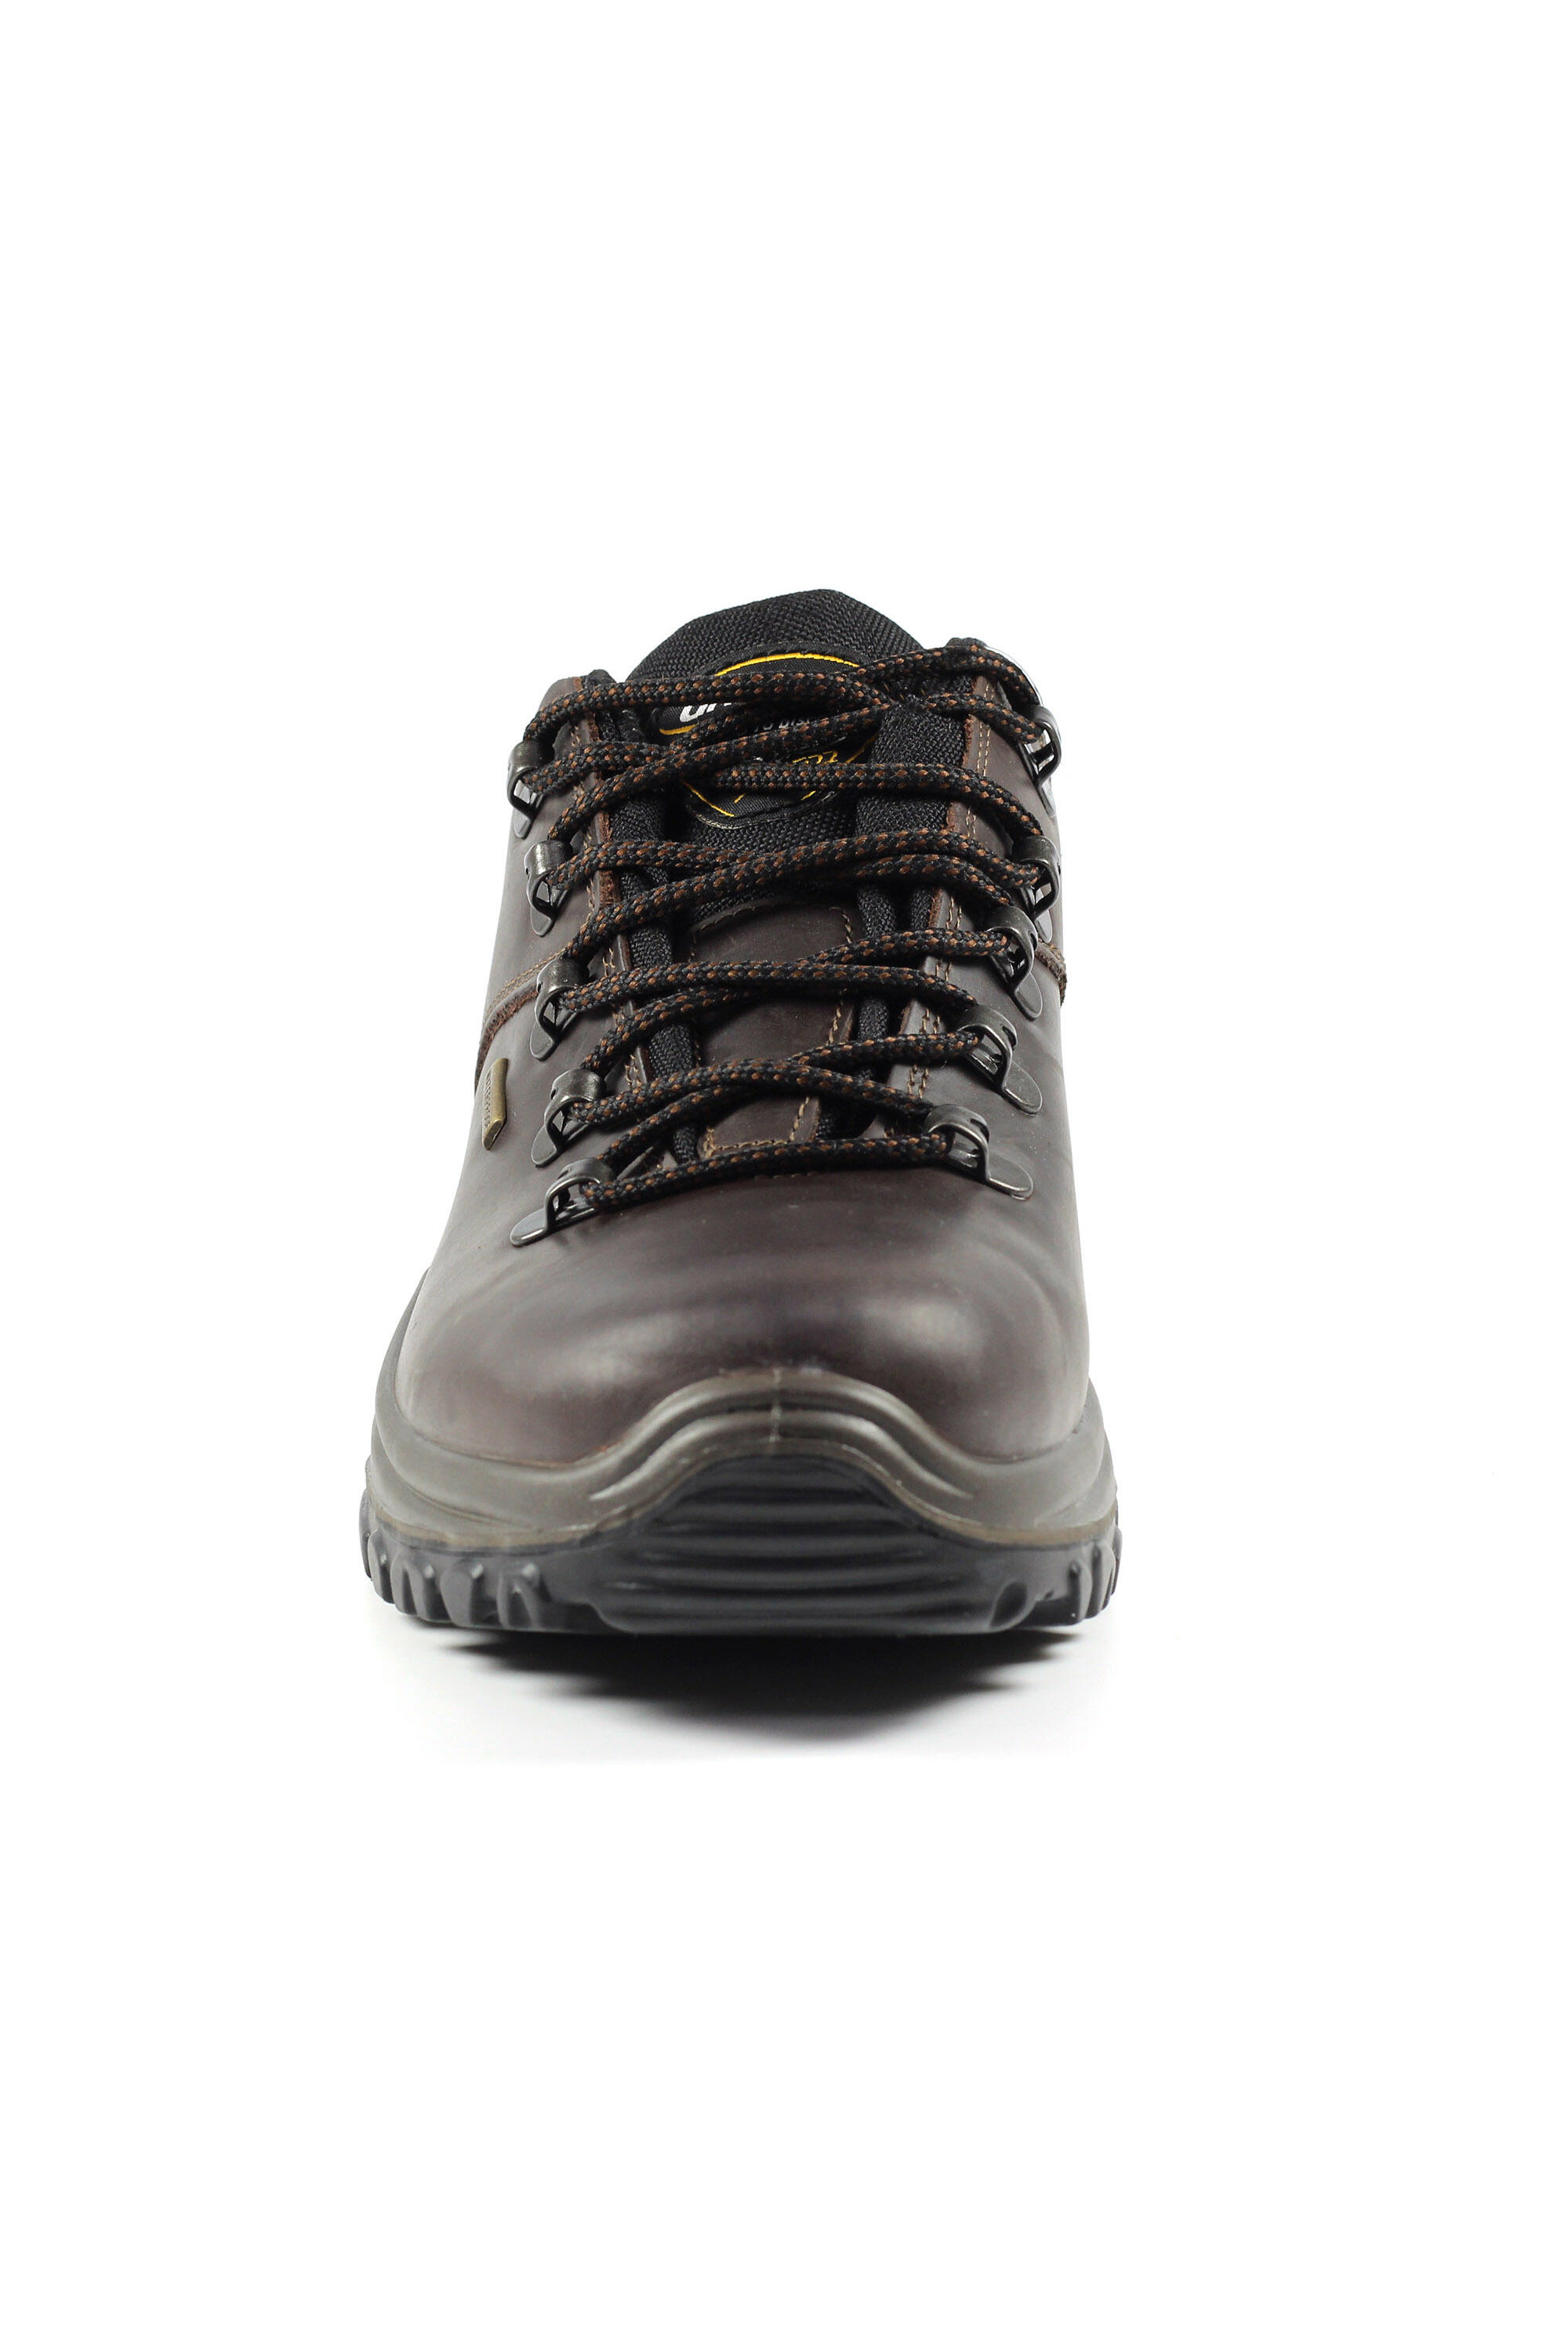 Dartmoor Brown Waterproof Walking Shoes 4/5